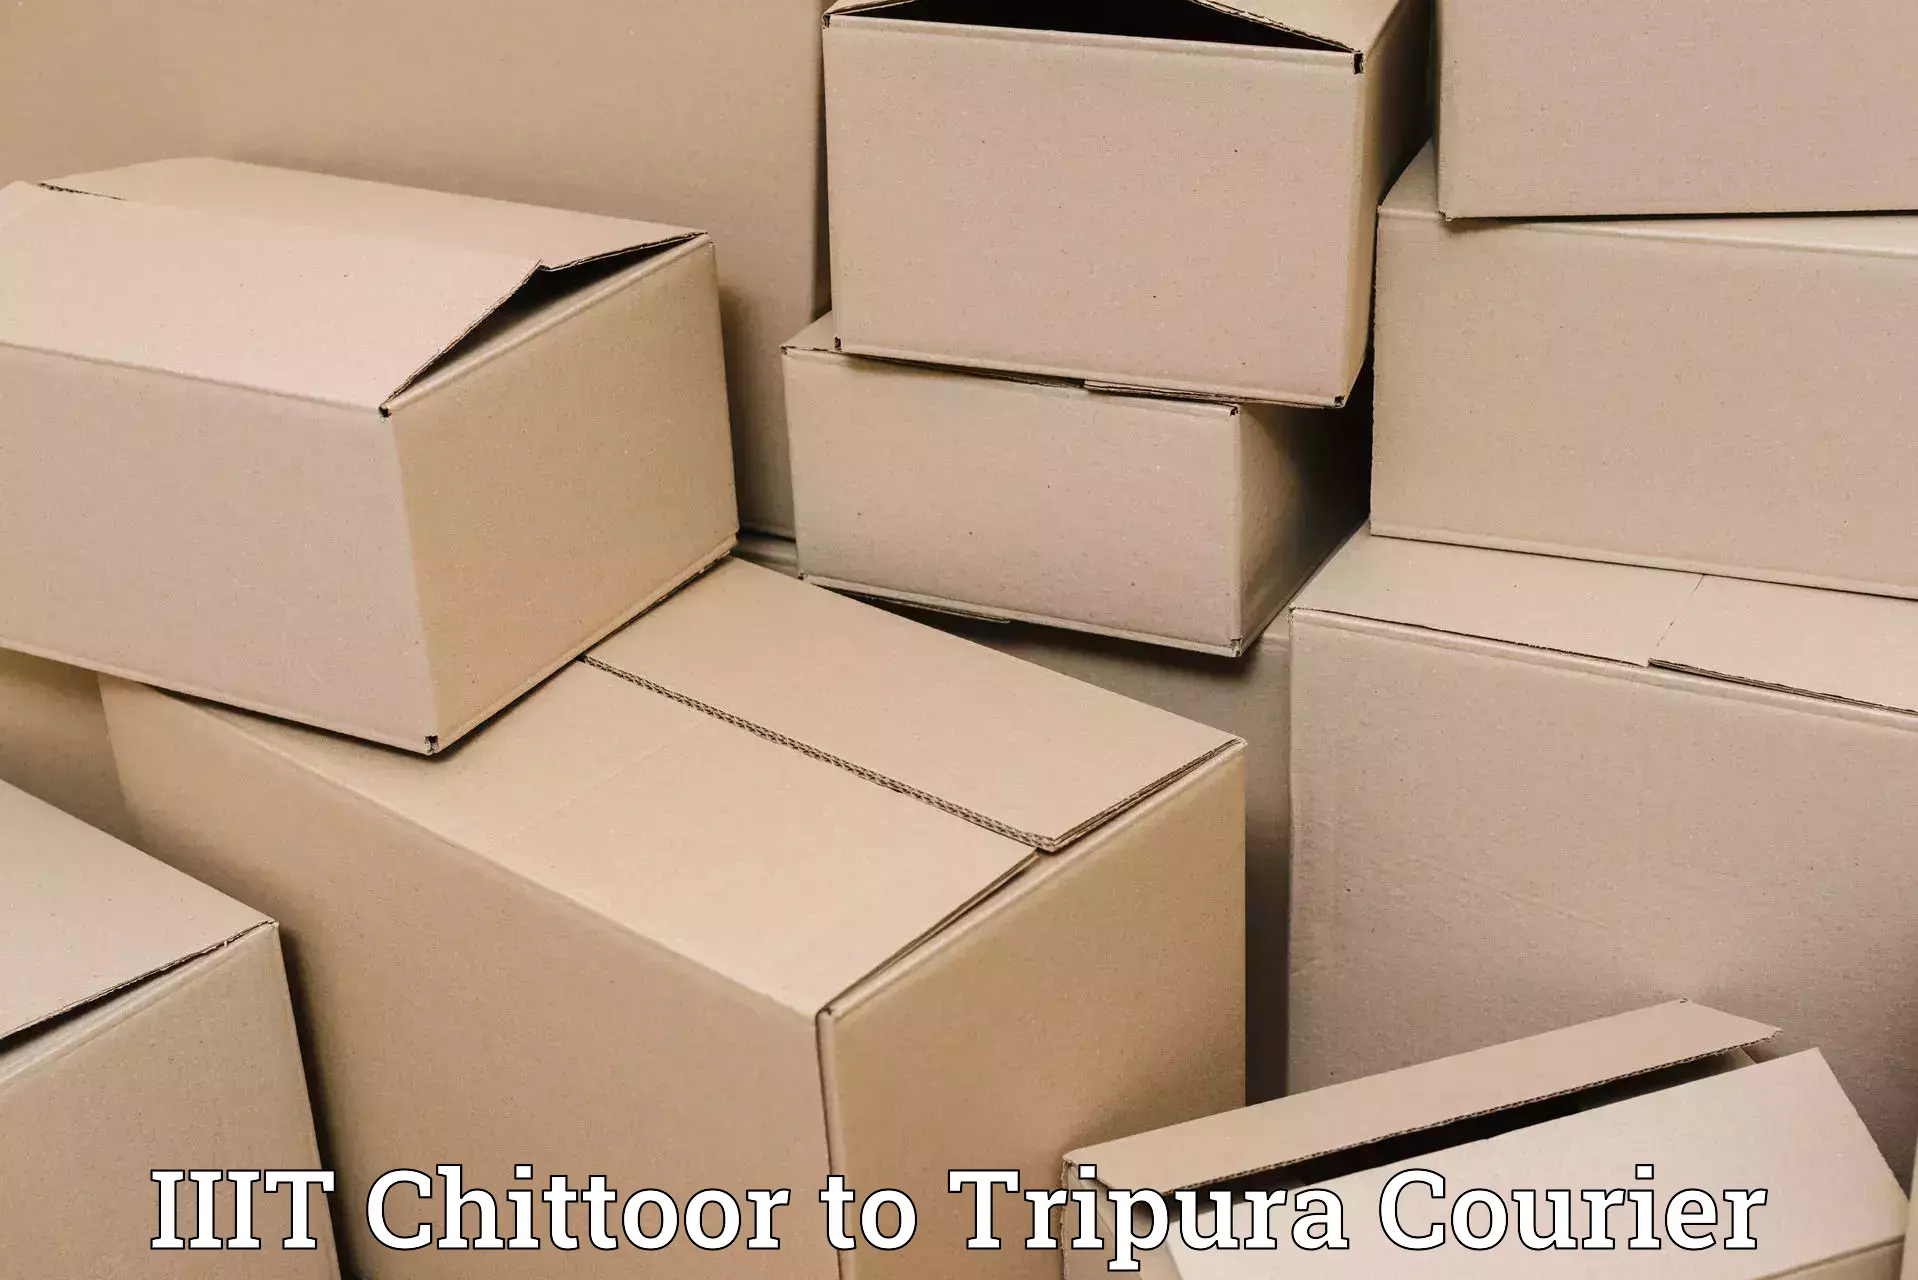 Speedy delivery service IIIT Chittoor to Bishalgarh